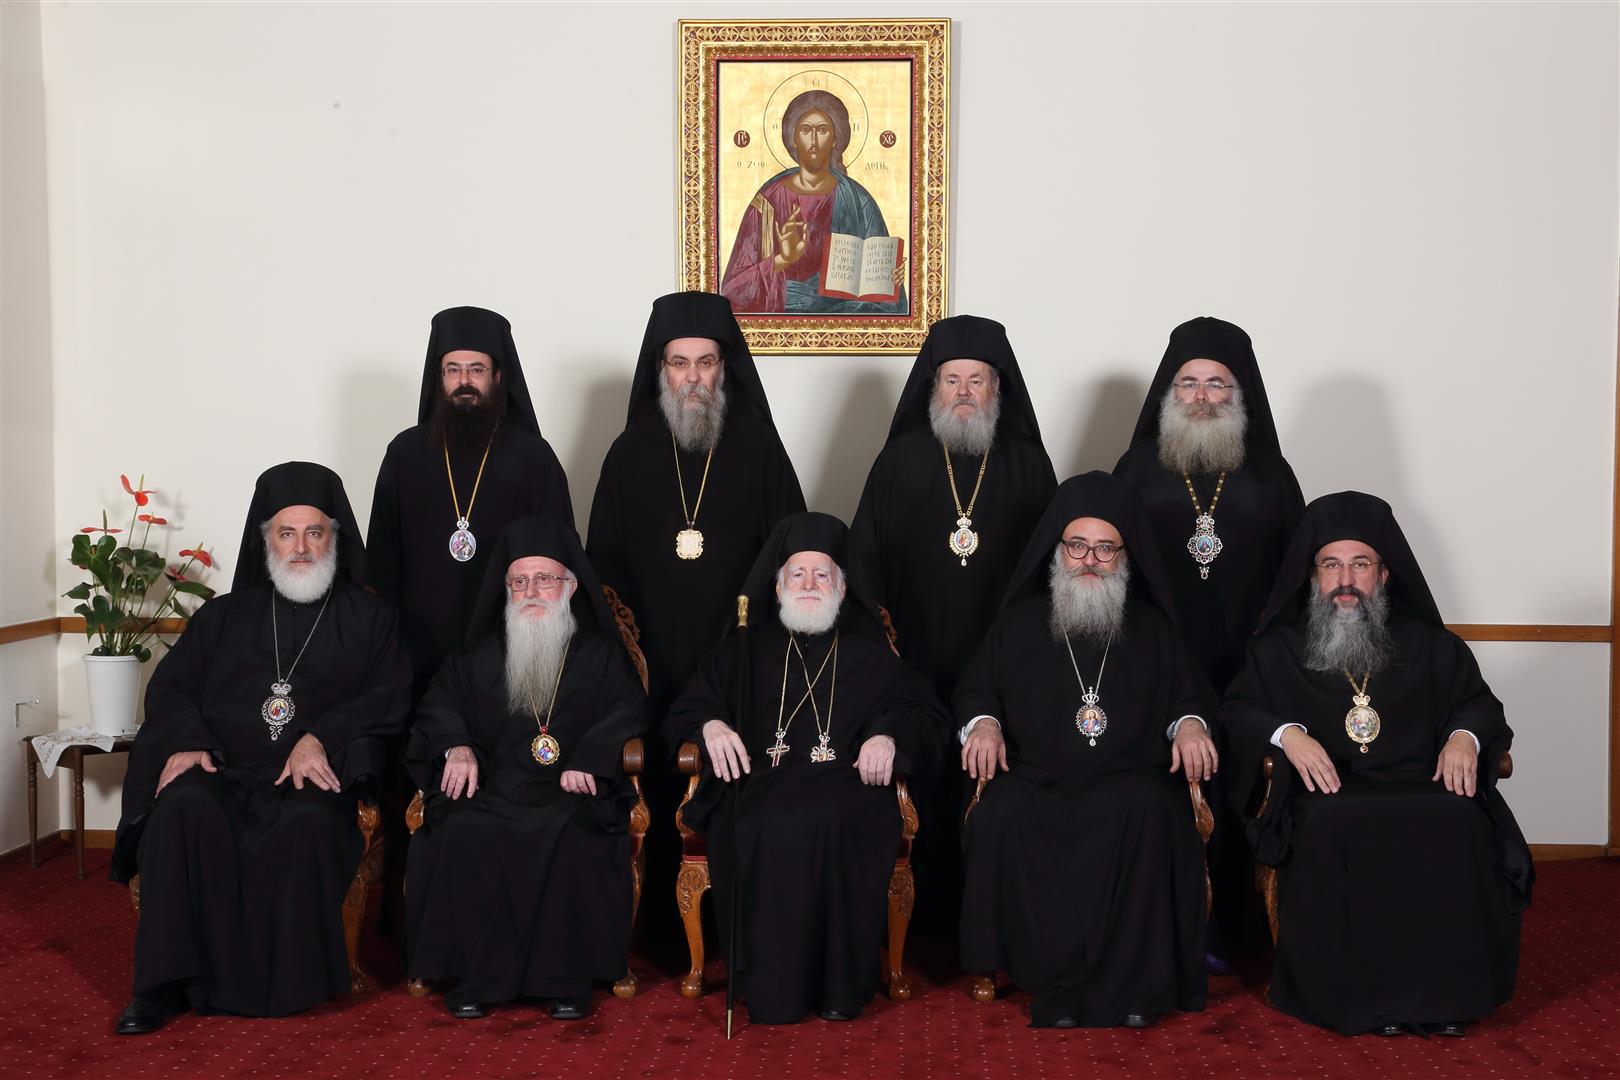 Σκληρή ανακοίνωση της Εκκλησίας της Κρήτης για τη συμφωνία Τσίπρα - Ιερώνυμου